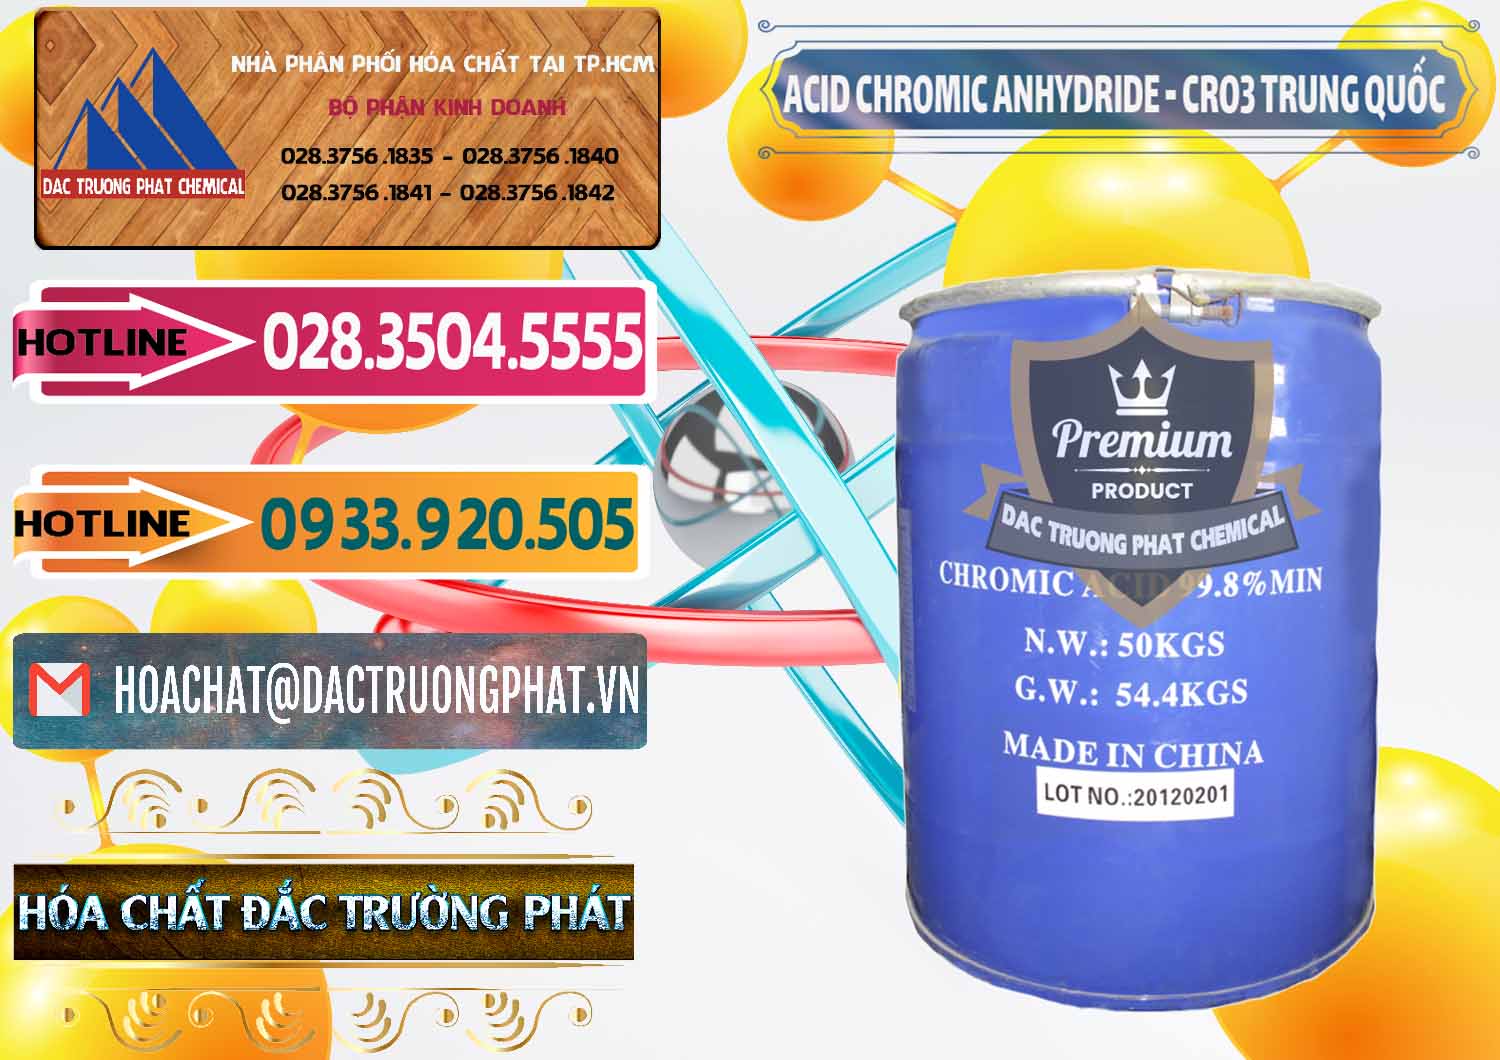 Công ty chuyên cung cấp và bán Acid Chromic Anhydride - Cromic CRO3 Trung Quốc China - 0007 - Công ty nhập khẩu - phân phối hóa chất tại TP.HCM - dactruongphat.vn